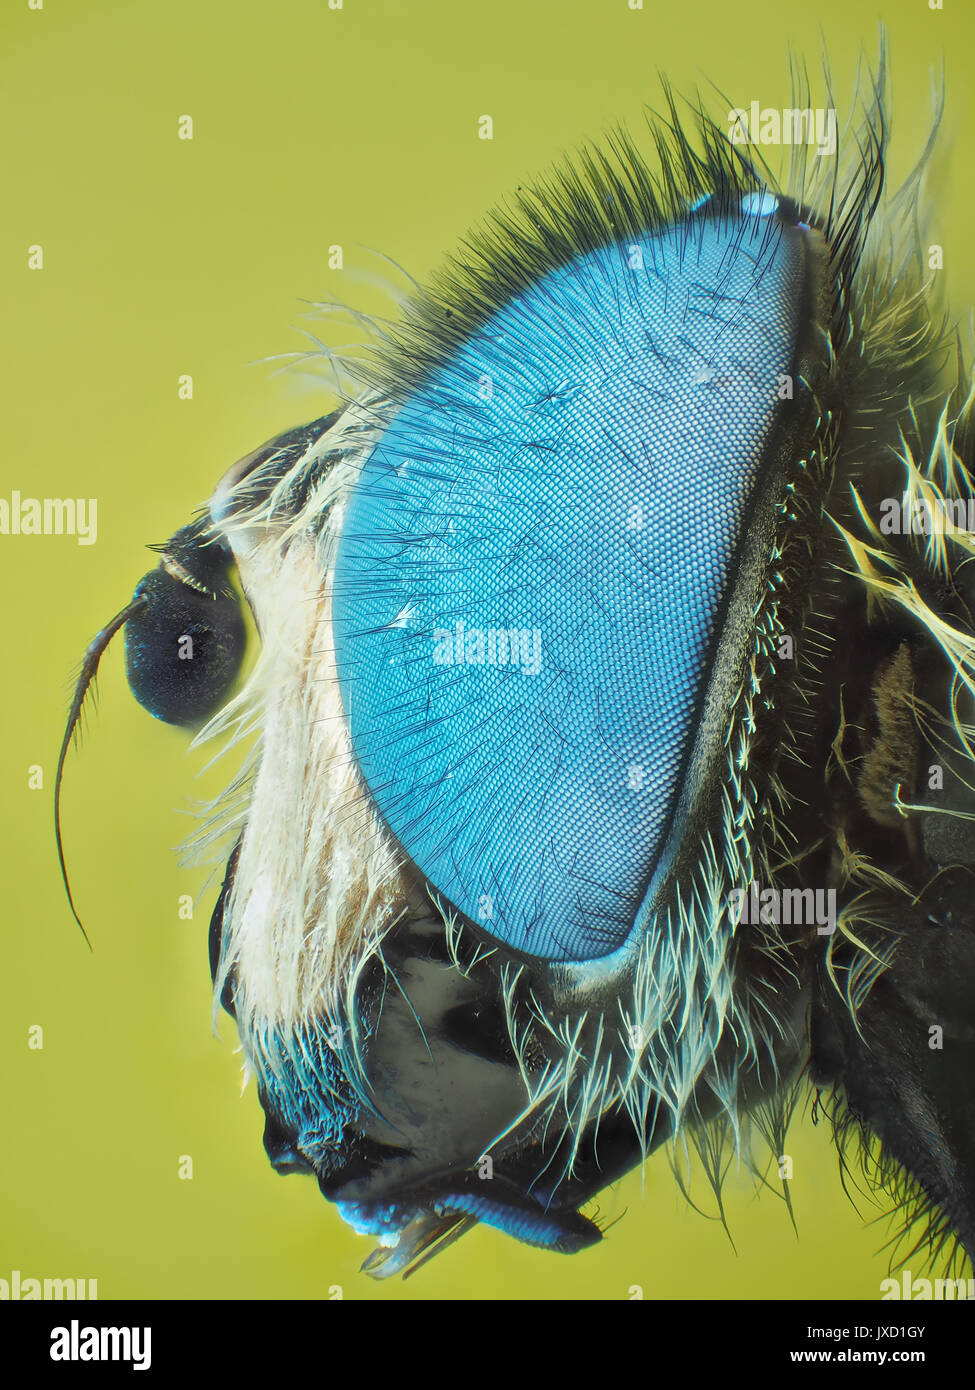 Hoverfly (Familie Syrphidae) mit fluoreszierenden blauen Augen, die sich sichtbar + UV-Licht Schliffbild, 24-fache Vergrößerung mit gedruckten 10 cm hoch Stockfoto